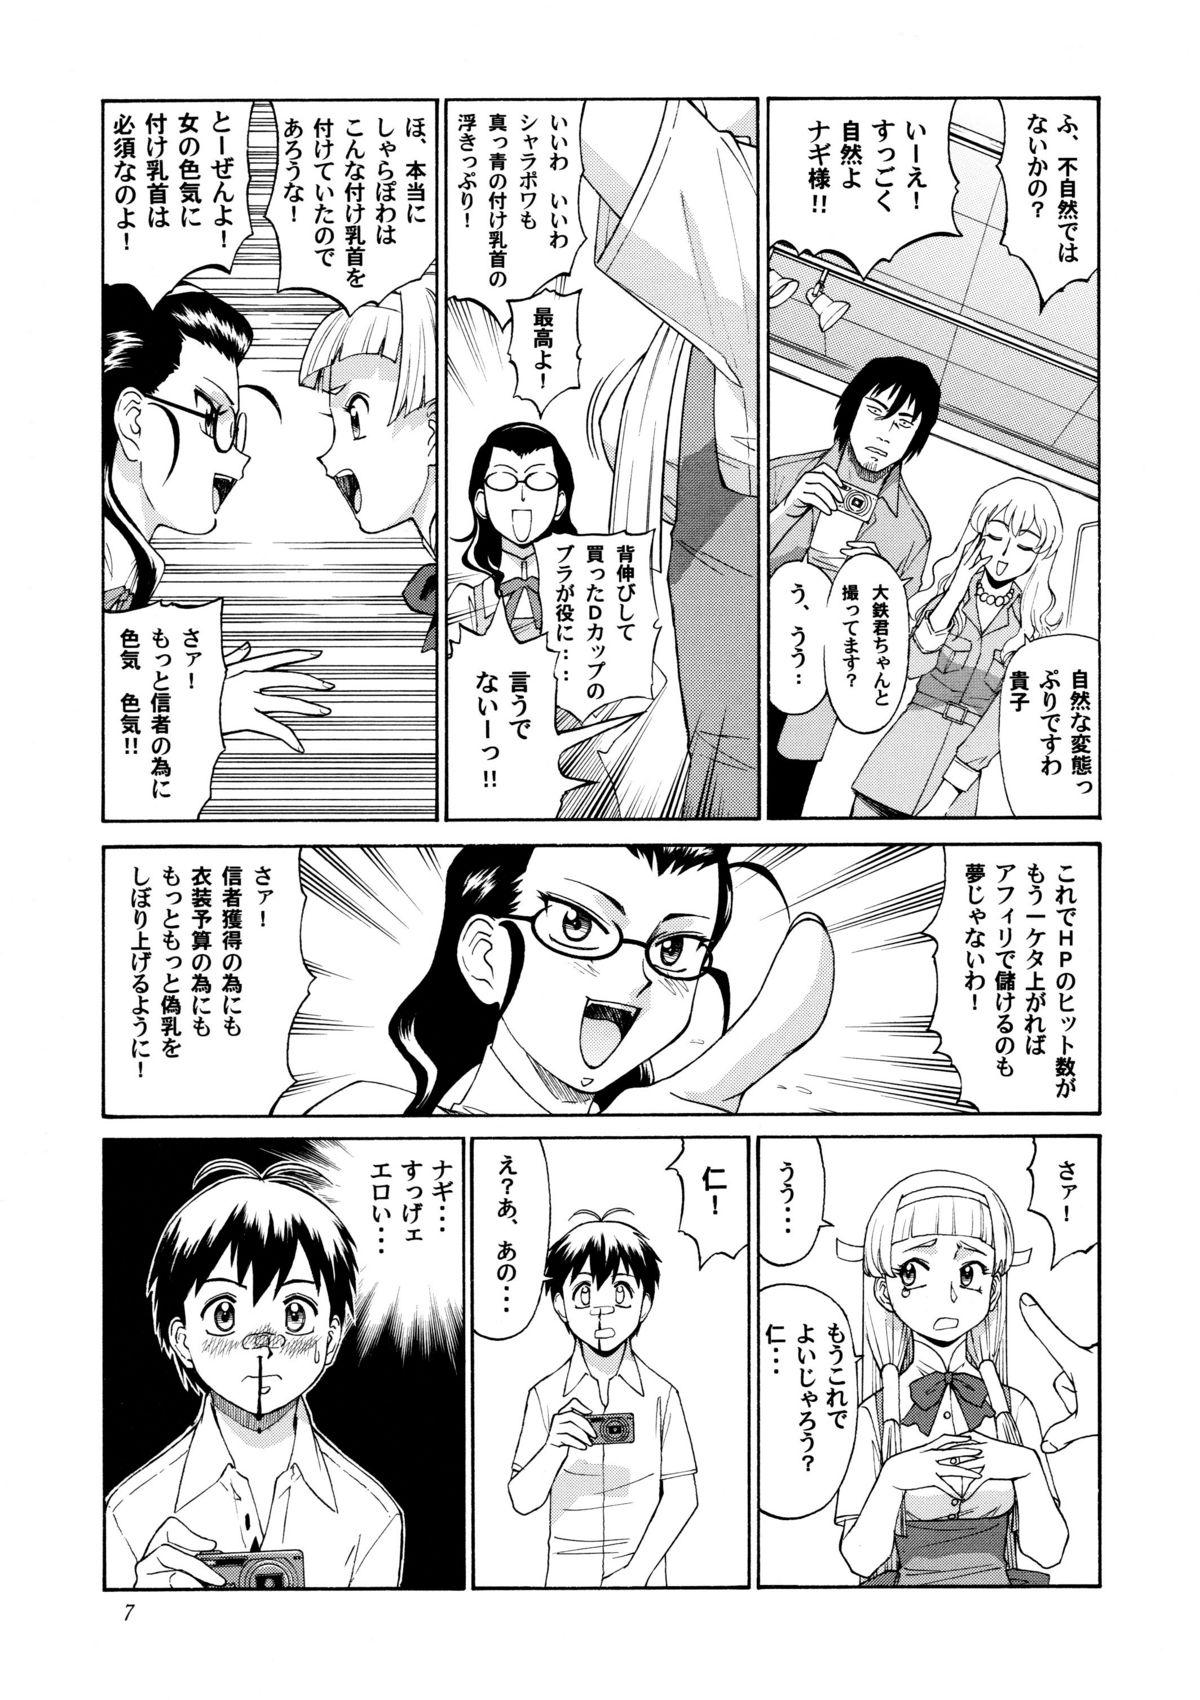 Blows Kamisama Megaton Punch 11 - Urusei yatsura Kannagi Utawarerumono Kamichu Wagaya no oinari-sama Comendo - Page 6